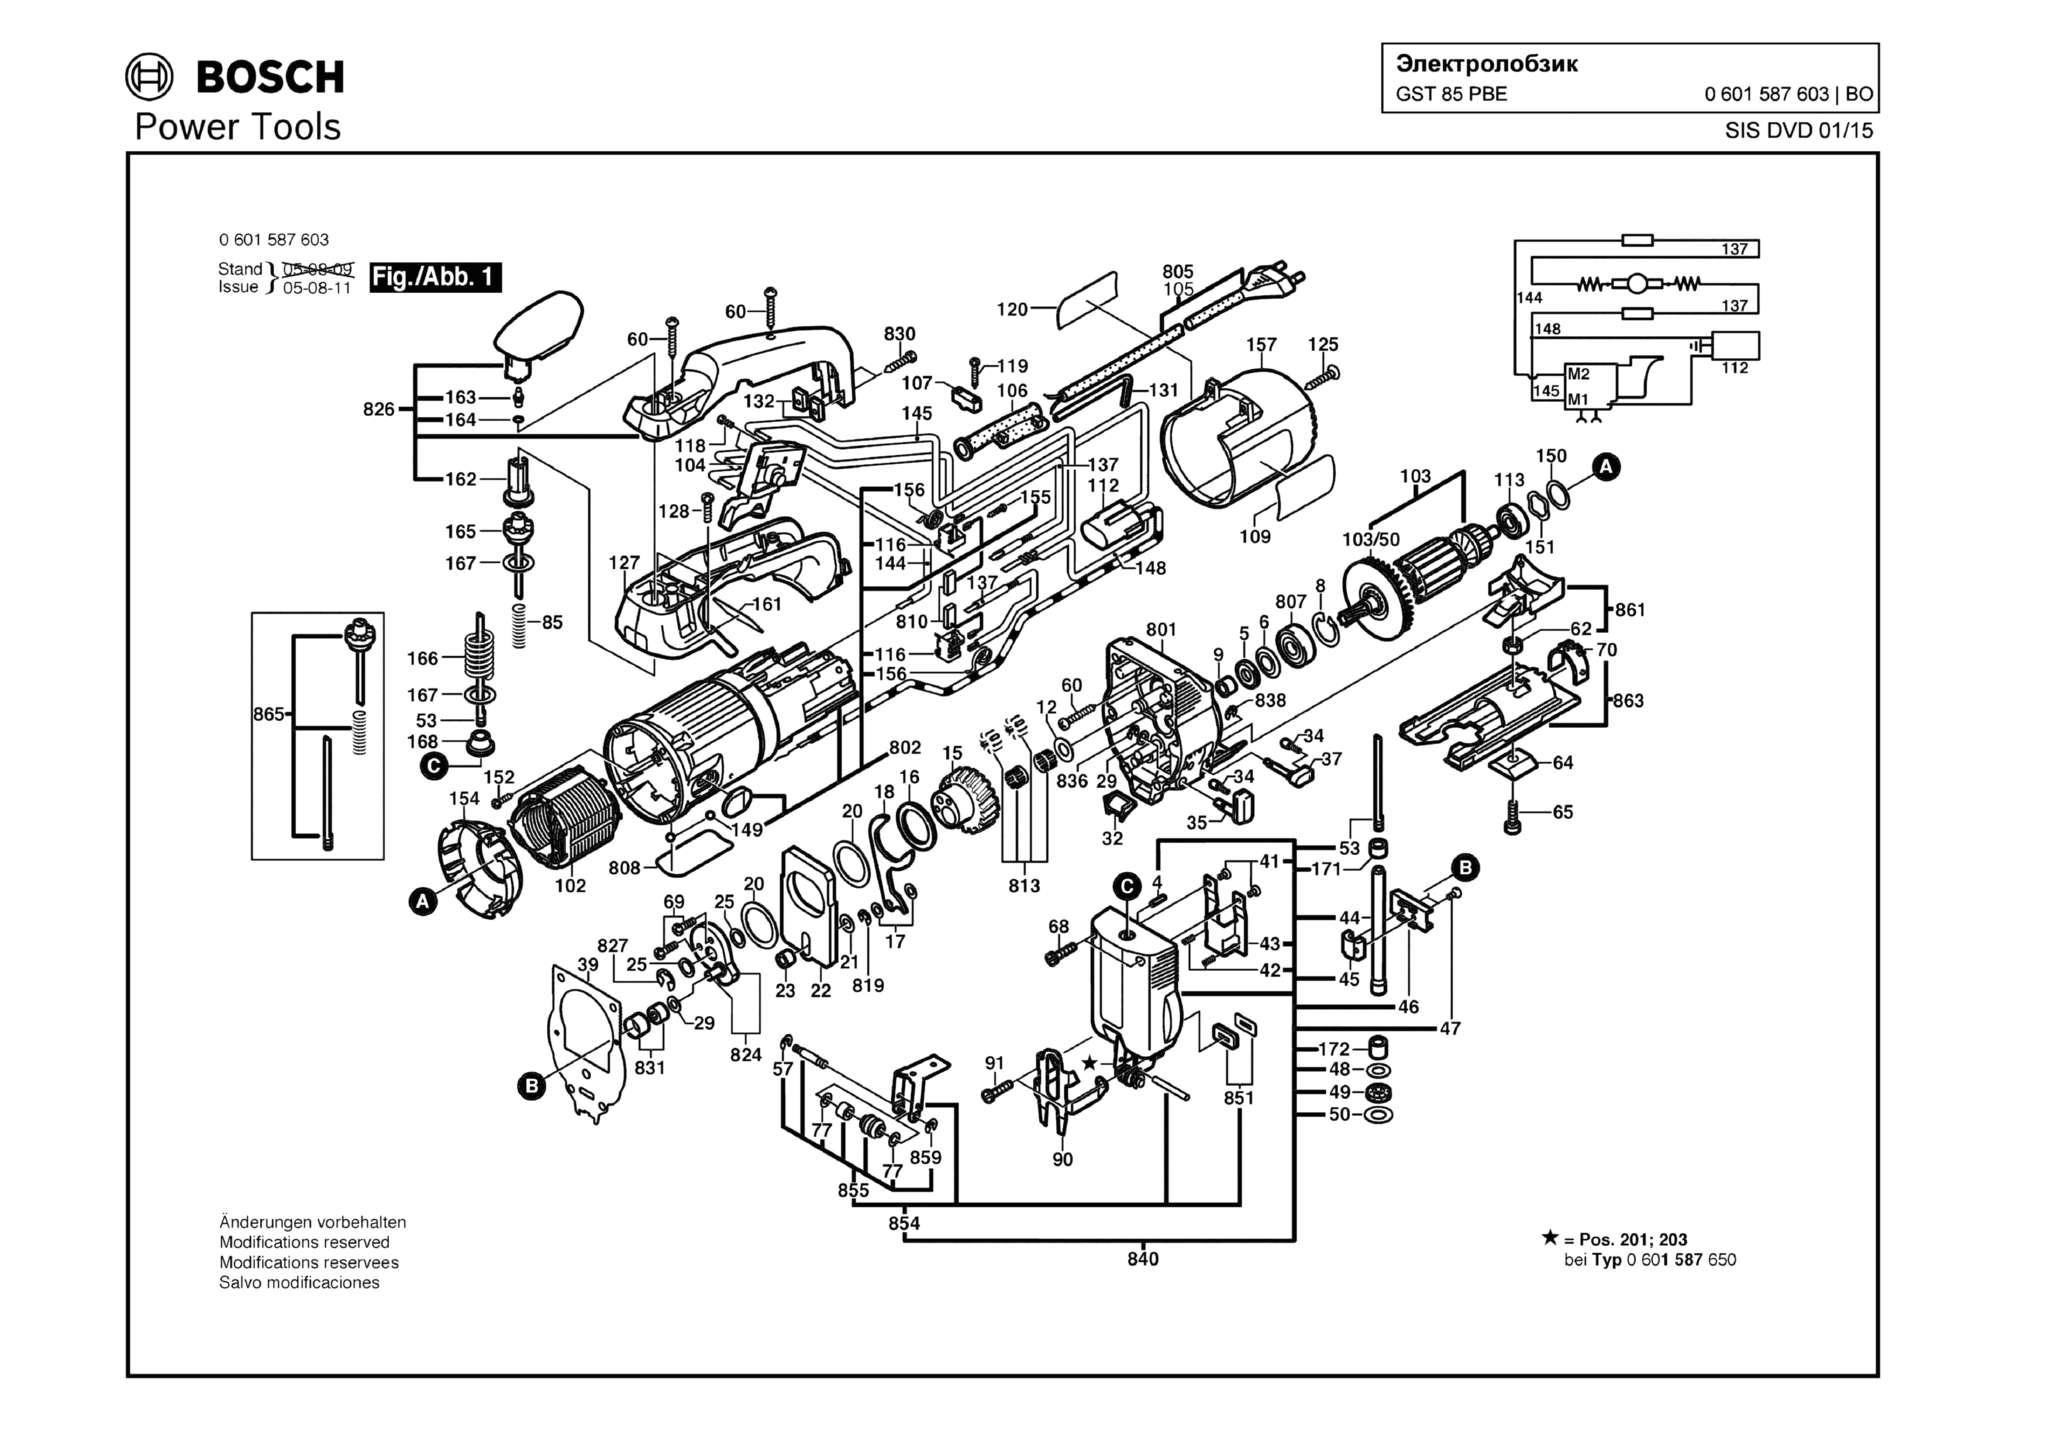 Запчасти, схема и деталировка Bosch GST 85 PBE (ТИП 0601587603)